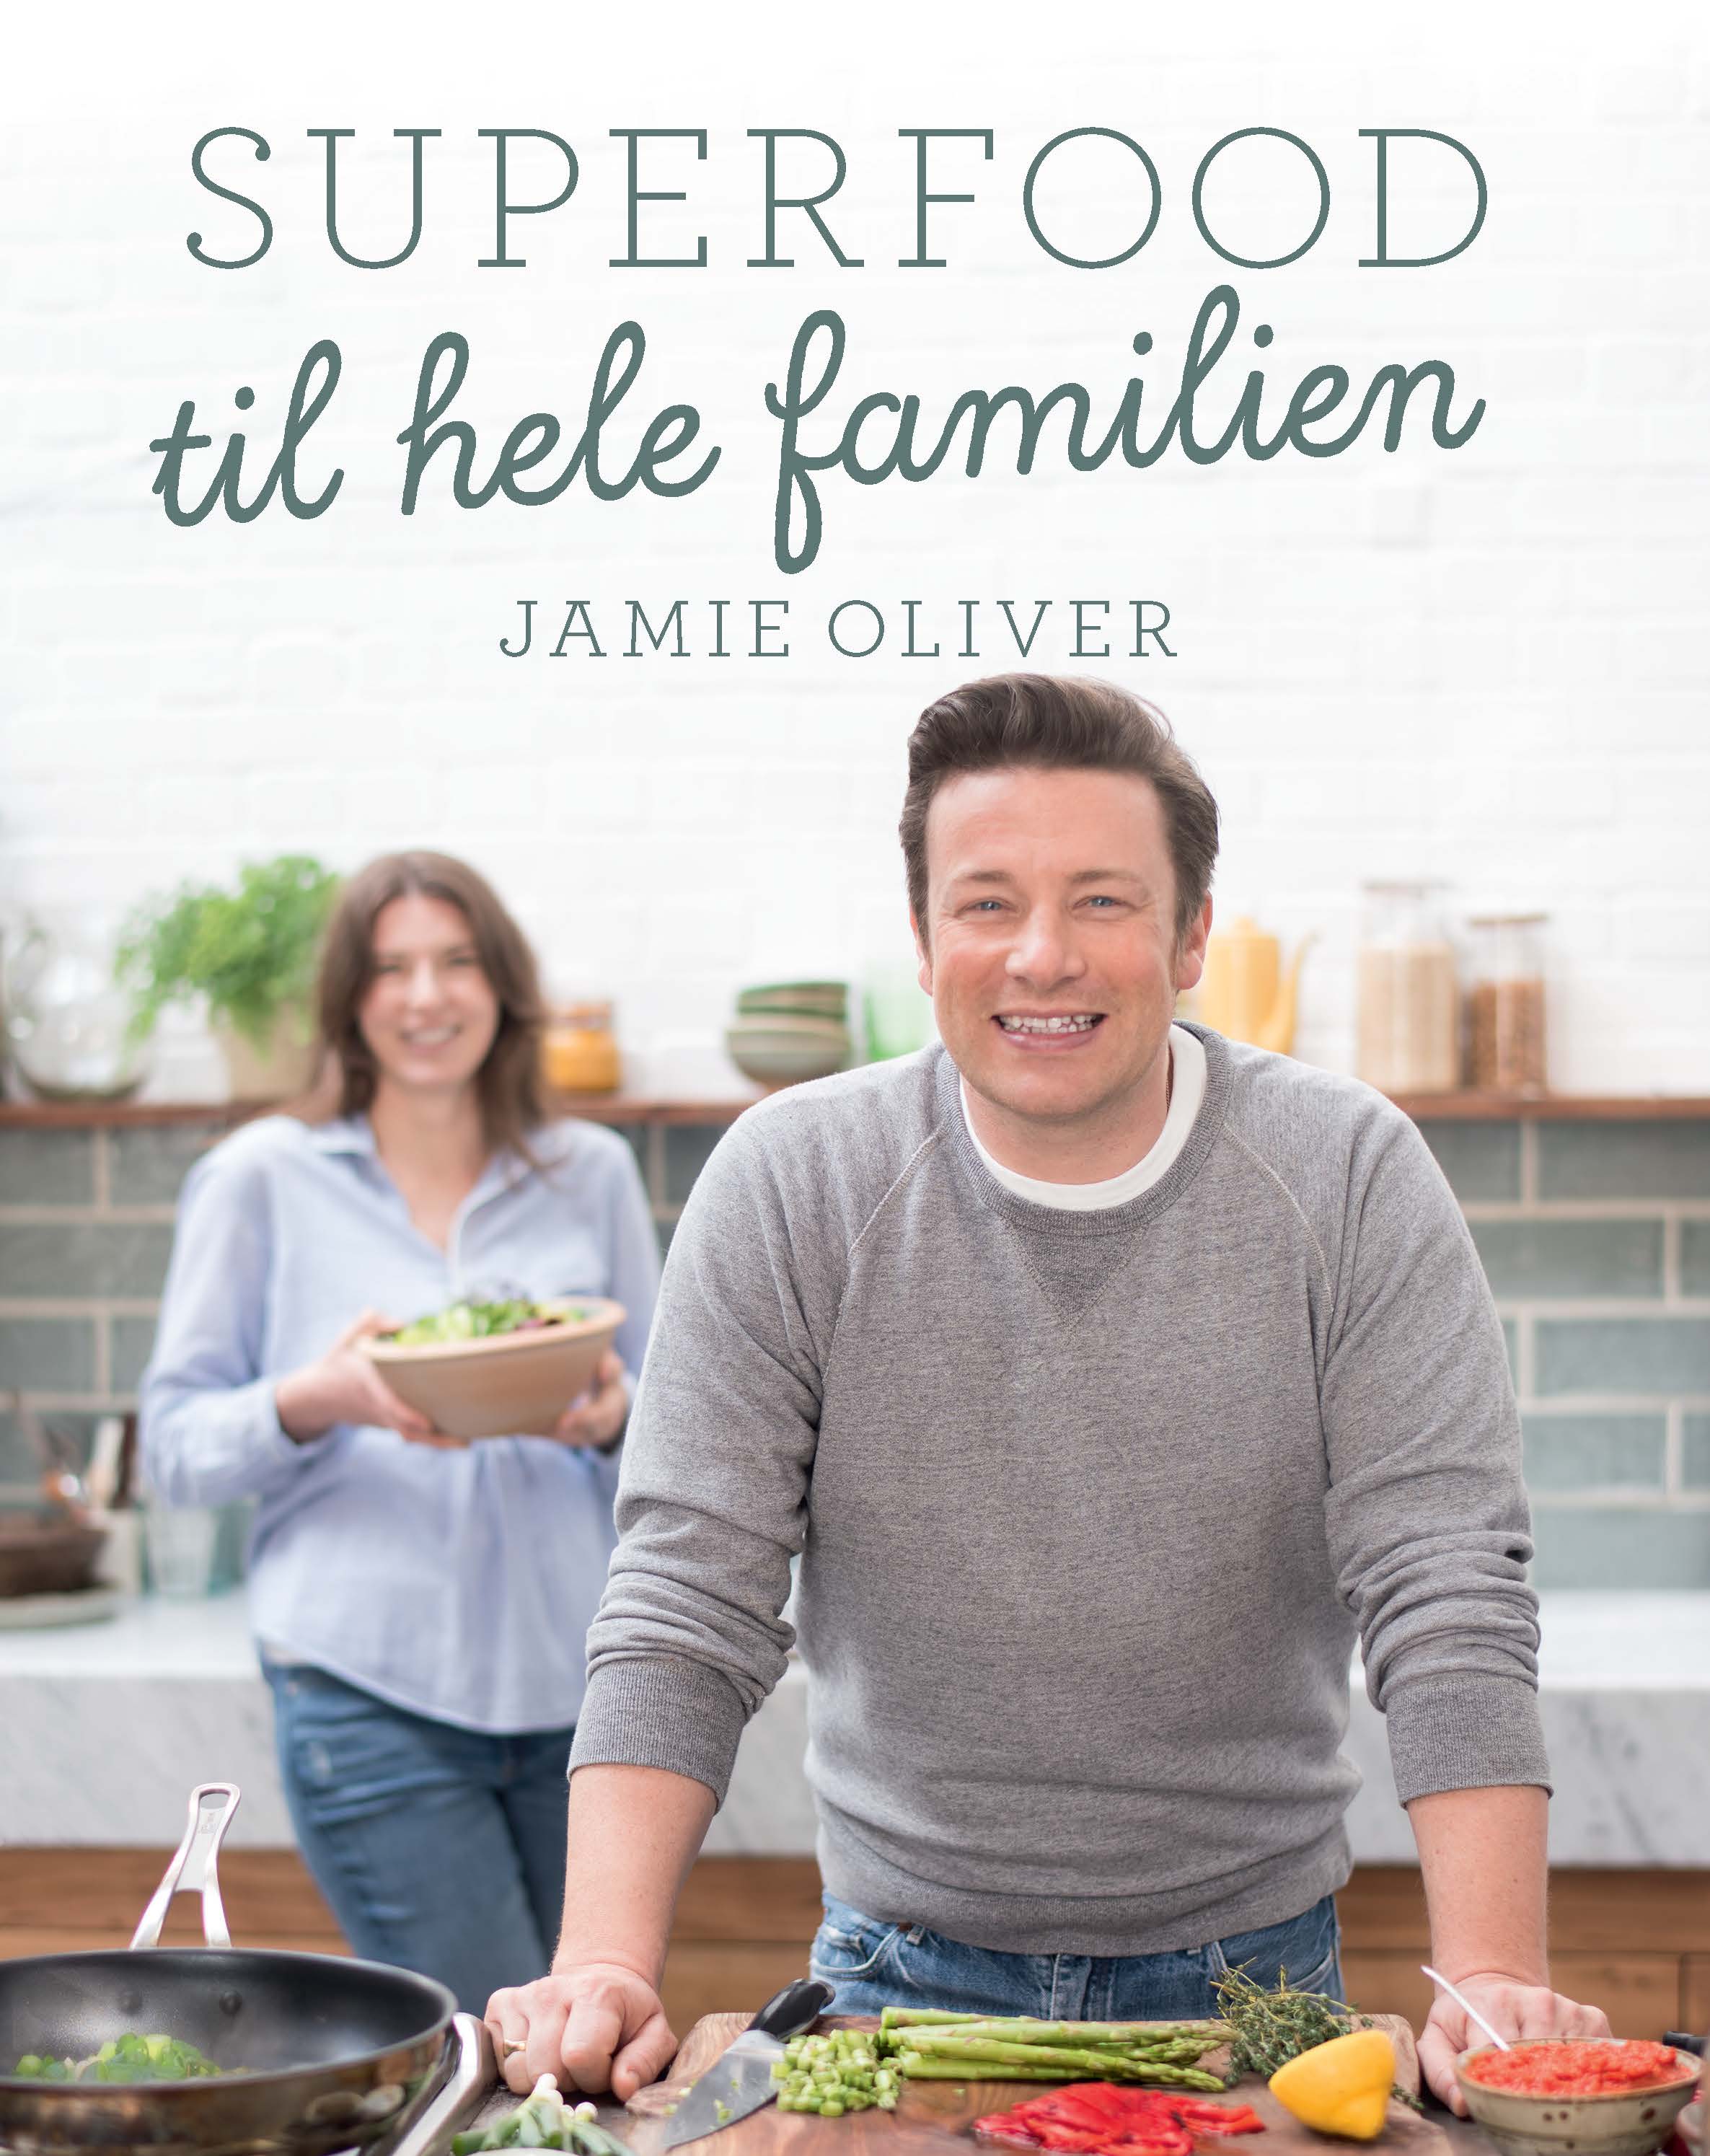 Jamie, Oliver, Jamie Oliver, Superfood, Superfood for hele familien, Børn i køkkenet, sund mad, lækker mad, nærende mad, slankende mad, Jamie Oliver bog, Jamie Oliver Superfood